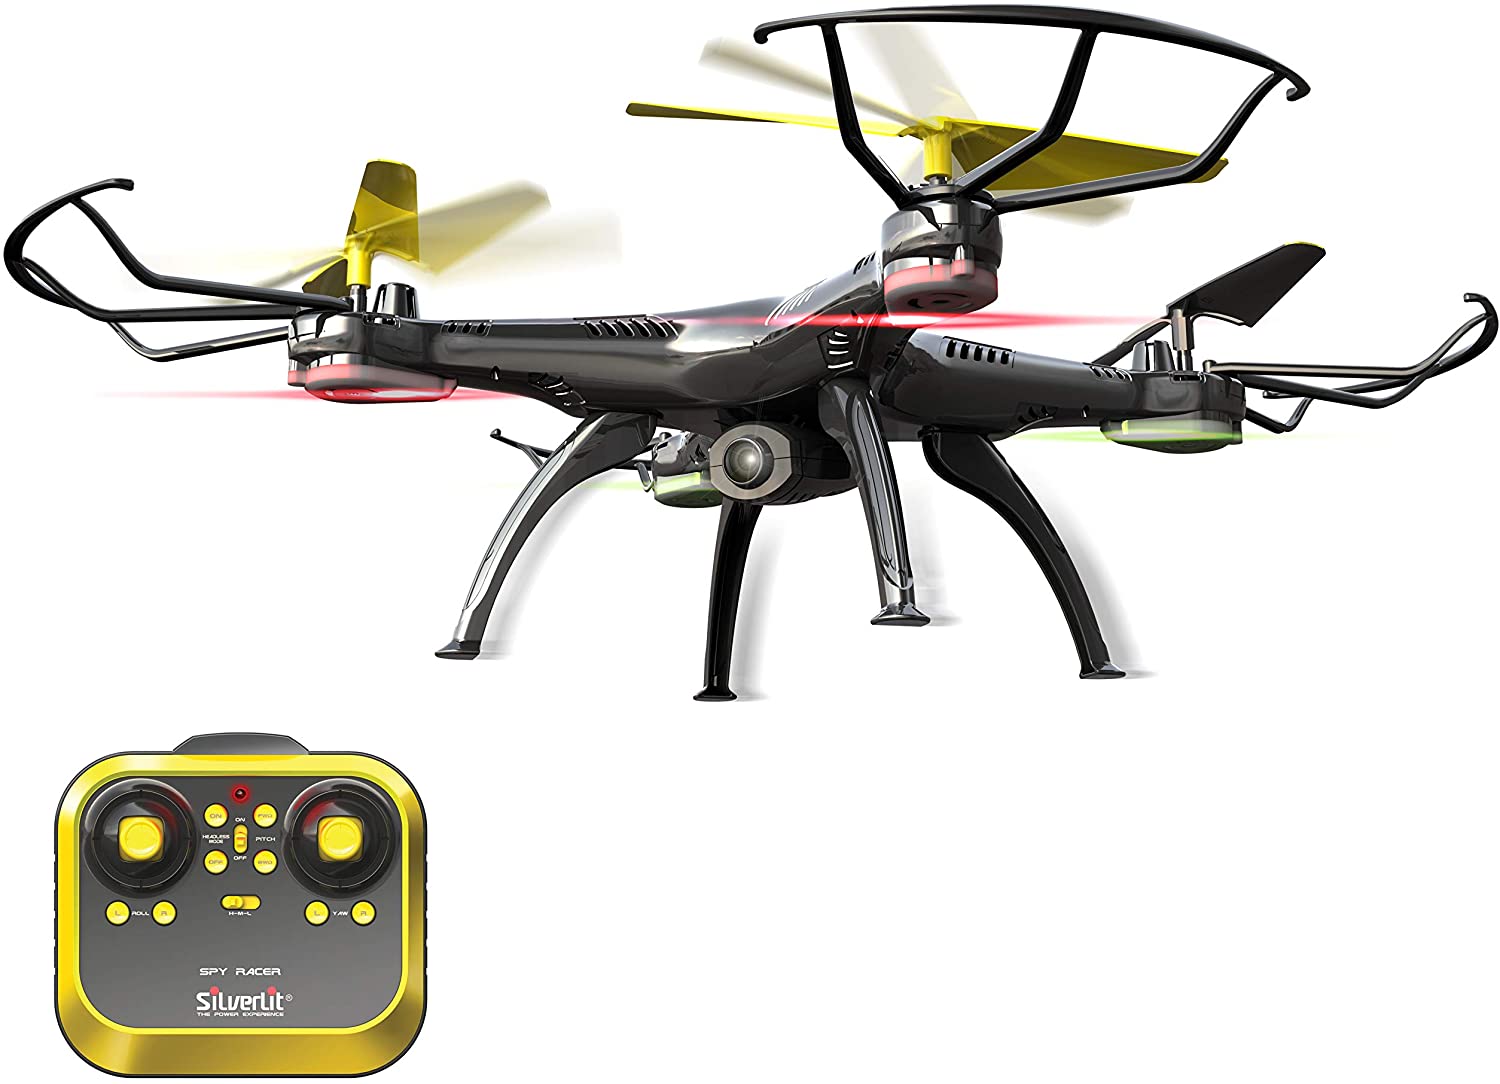 Stikke ud dynasti har en finger i kagen Flybotic Spy Racer: remote-controlled drone with camera